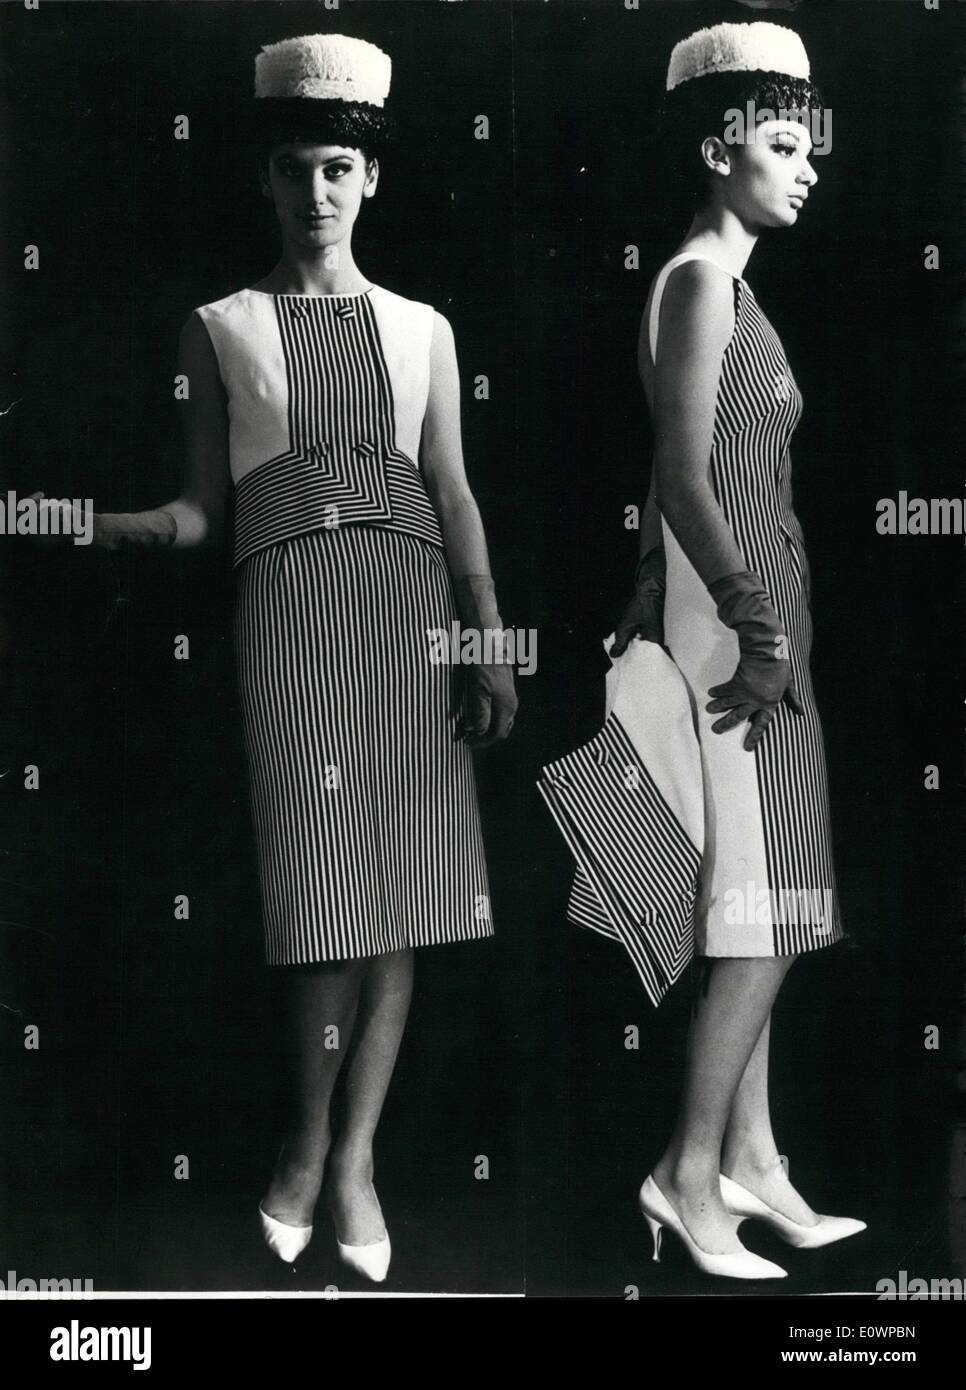 01 janv., 1964 - ''jeunesse'' est le nom de ce noir et blanc robe rayée et veste ; la ligne de la robe est droite avec un décolleté dans le dos. la robe FN a été présenté cet après-midi, au cours d'un défilé de mode sur Rome. Banque D'Images